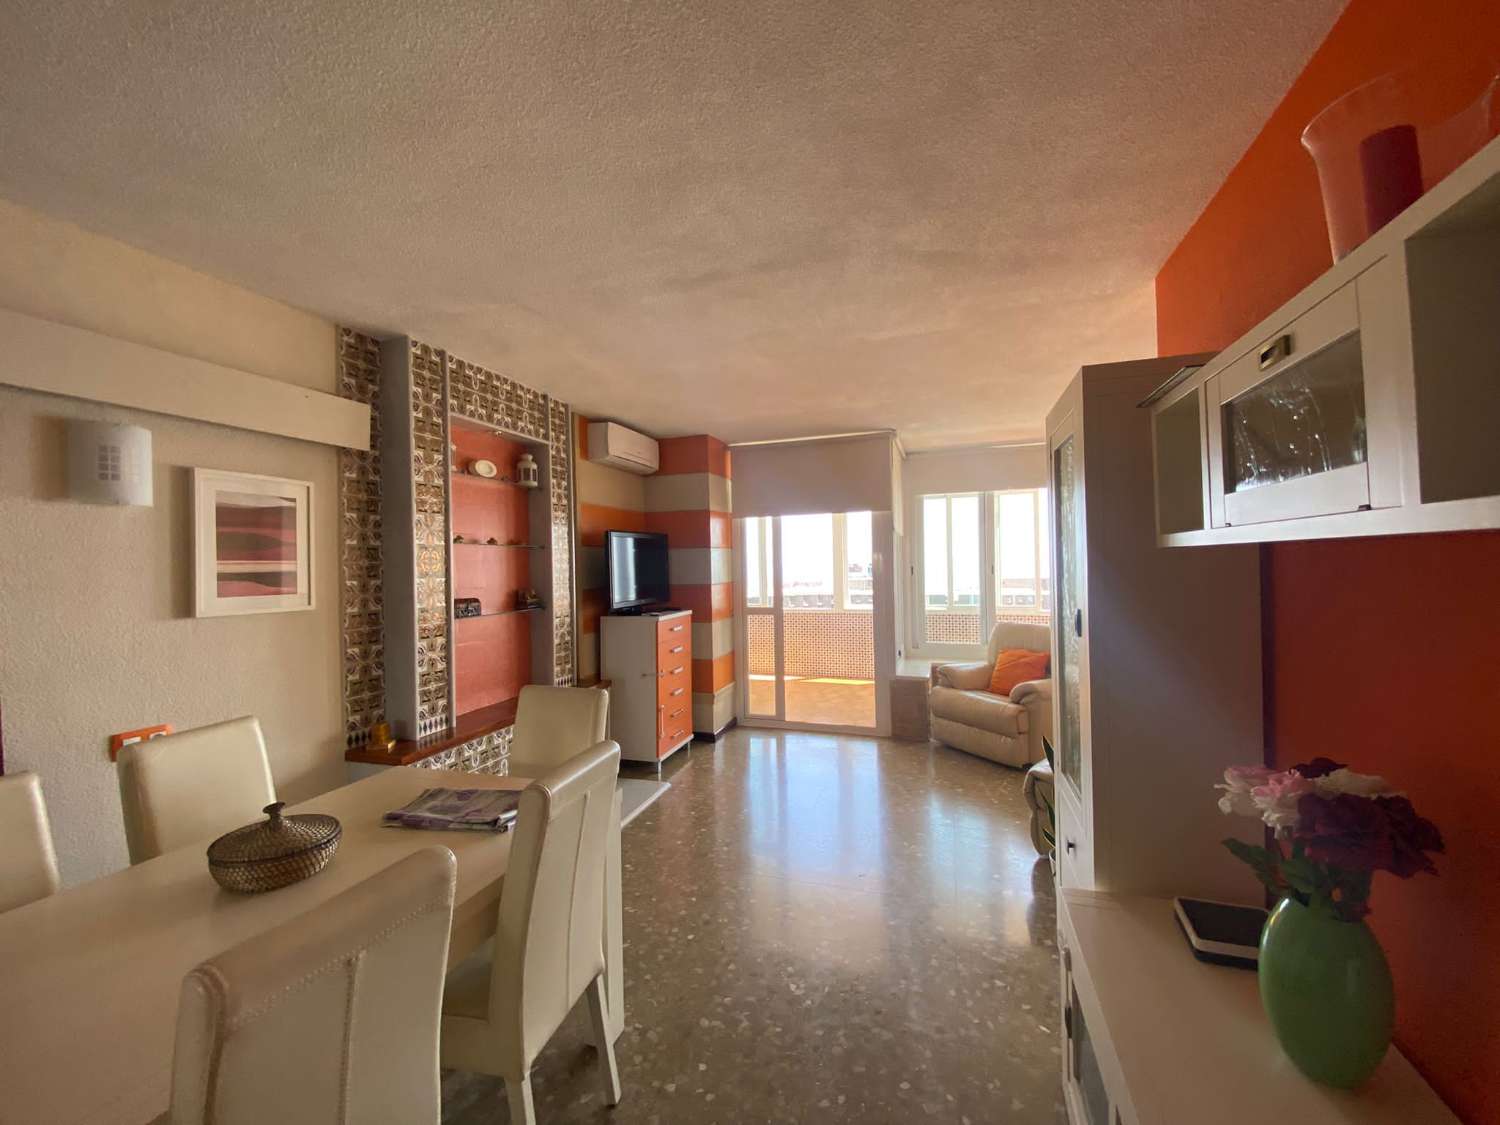 Te huur van 01/09/23 tot 30/06/24 prachtig appartement in Playamar met uitzicht op zee (Torremolinos)